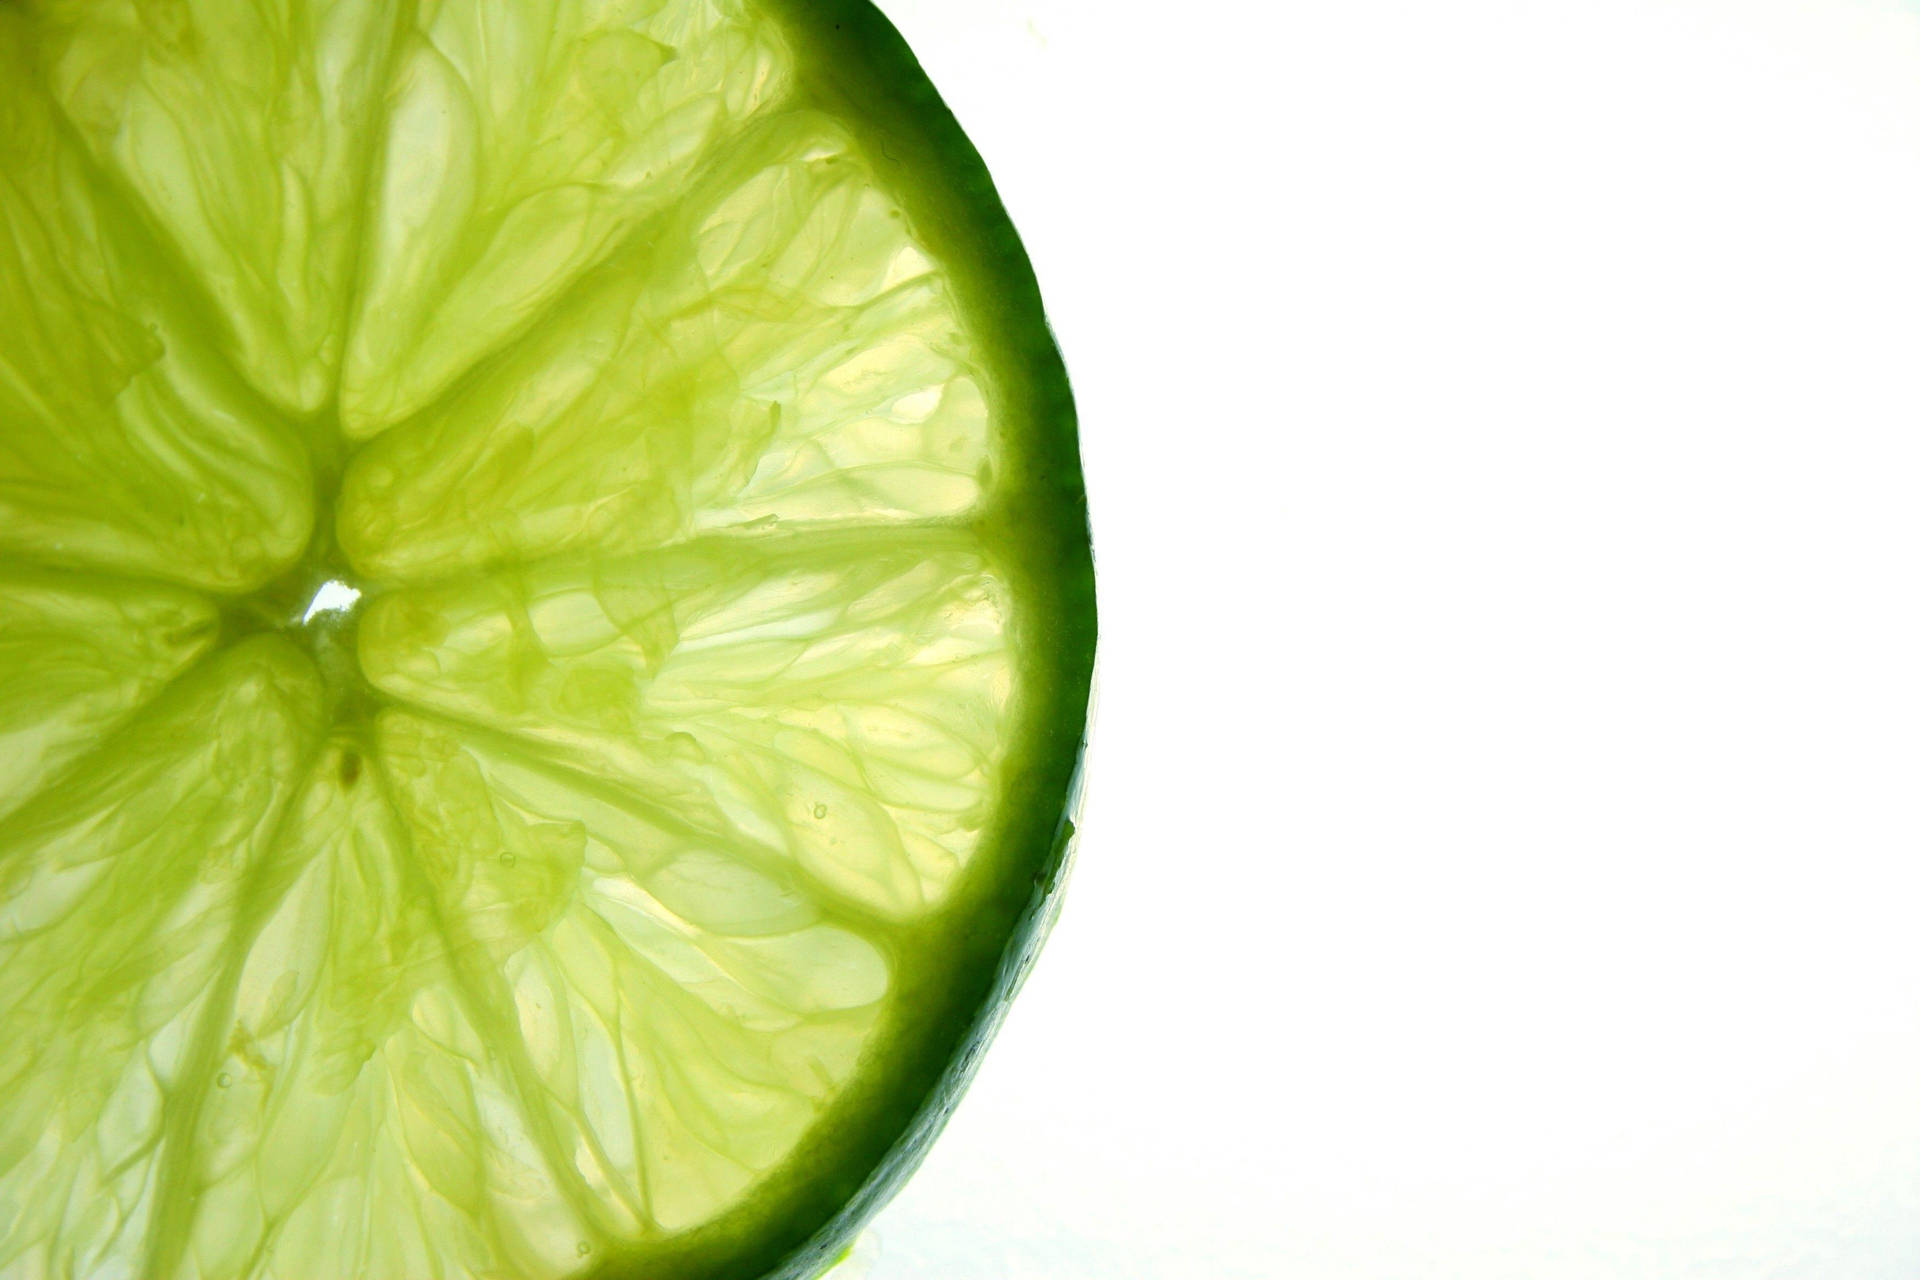 Pulveraktigttunt Skivat Grönt Lime-citrus På Datorskärmen/mobilskärmen. Wallpaper